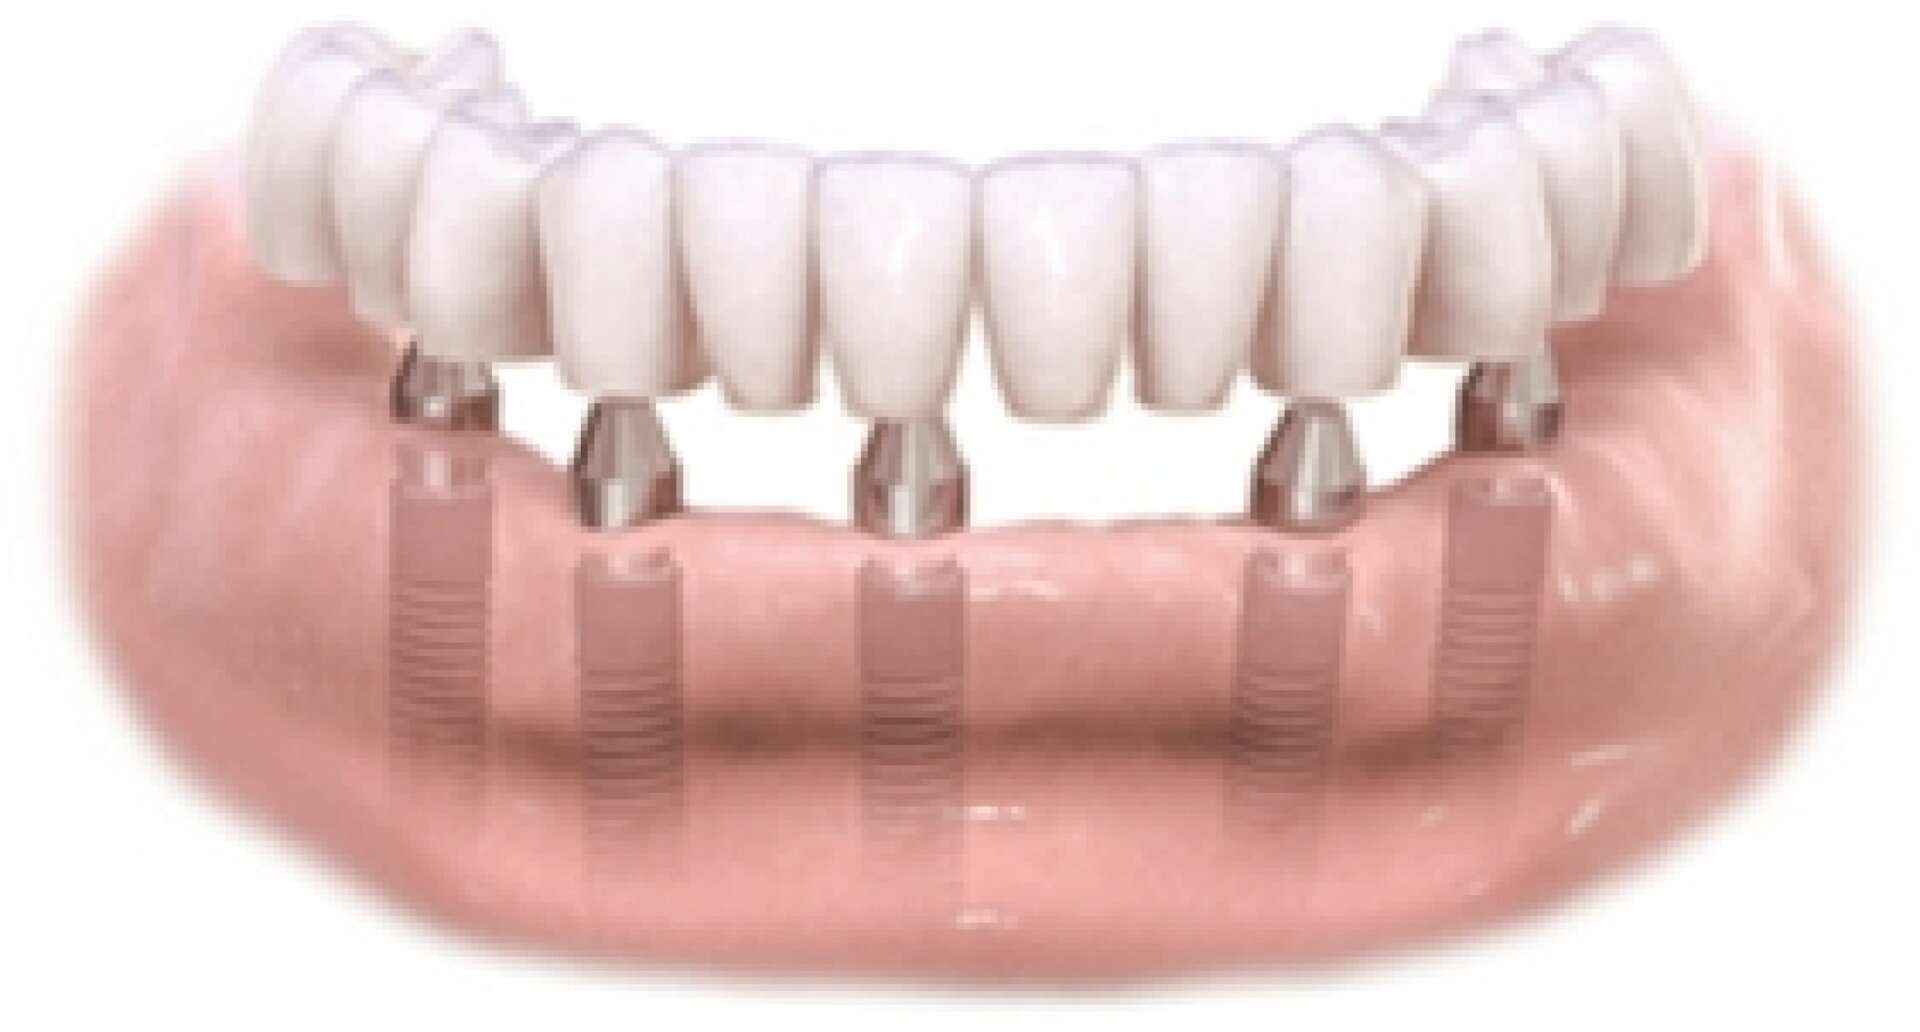 All teeth implants 3